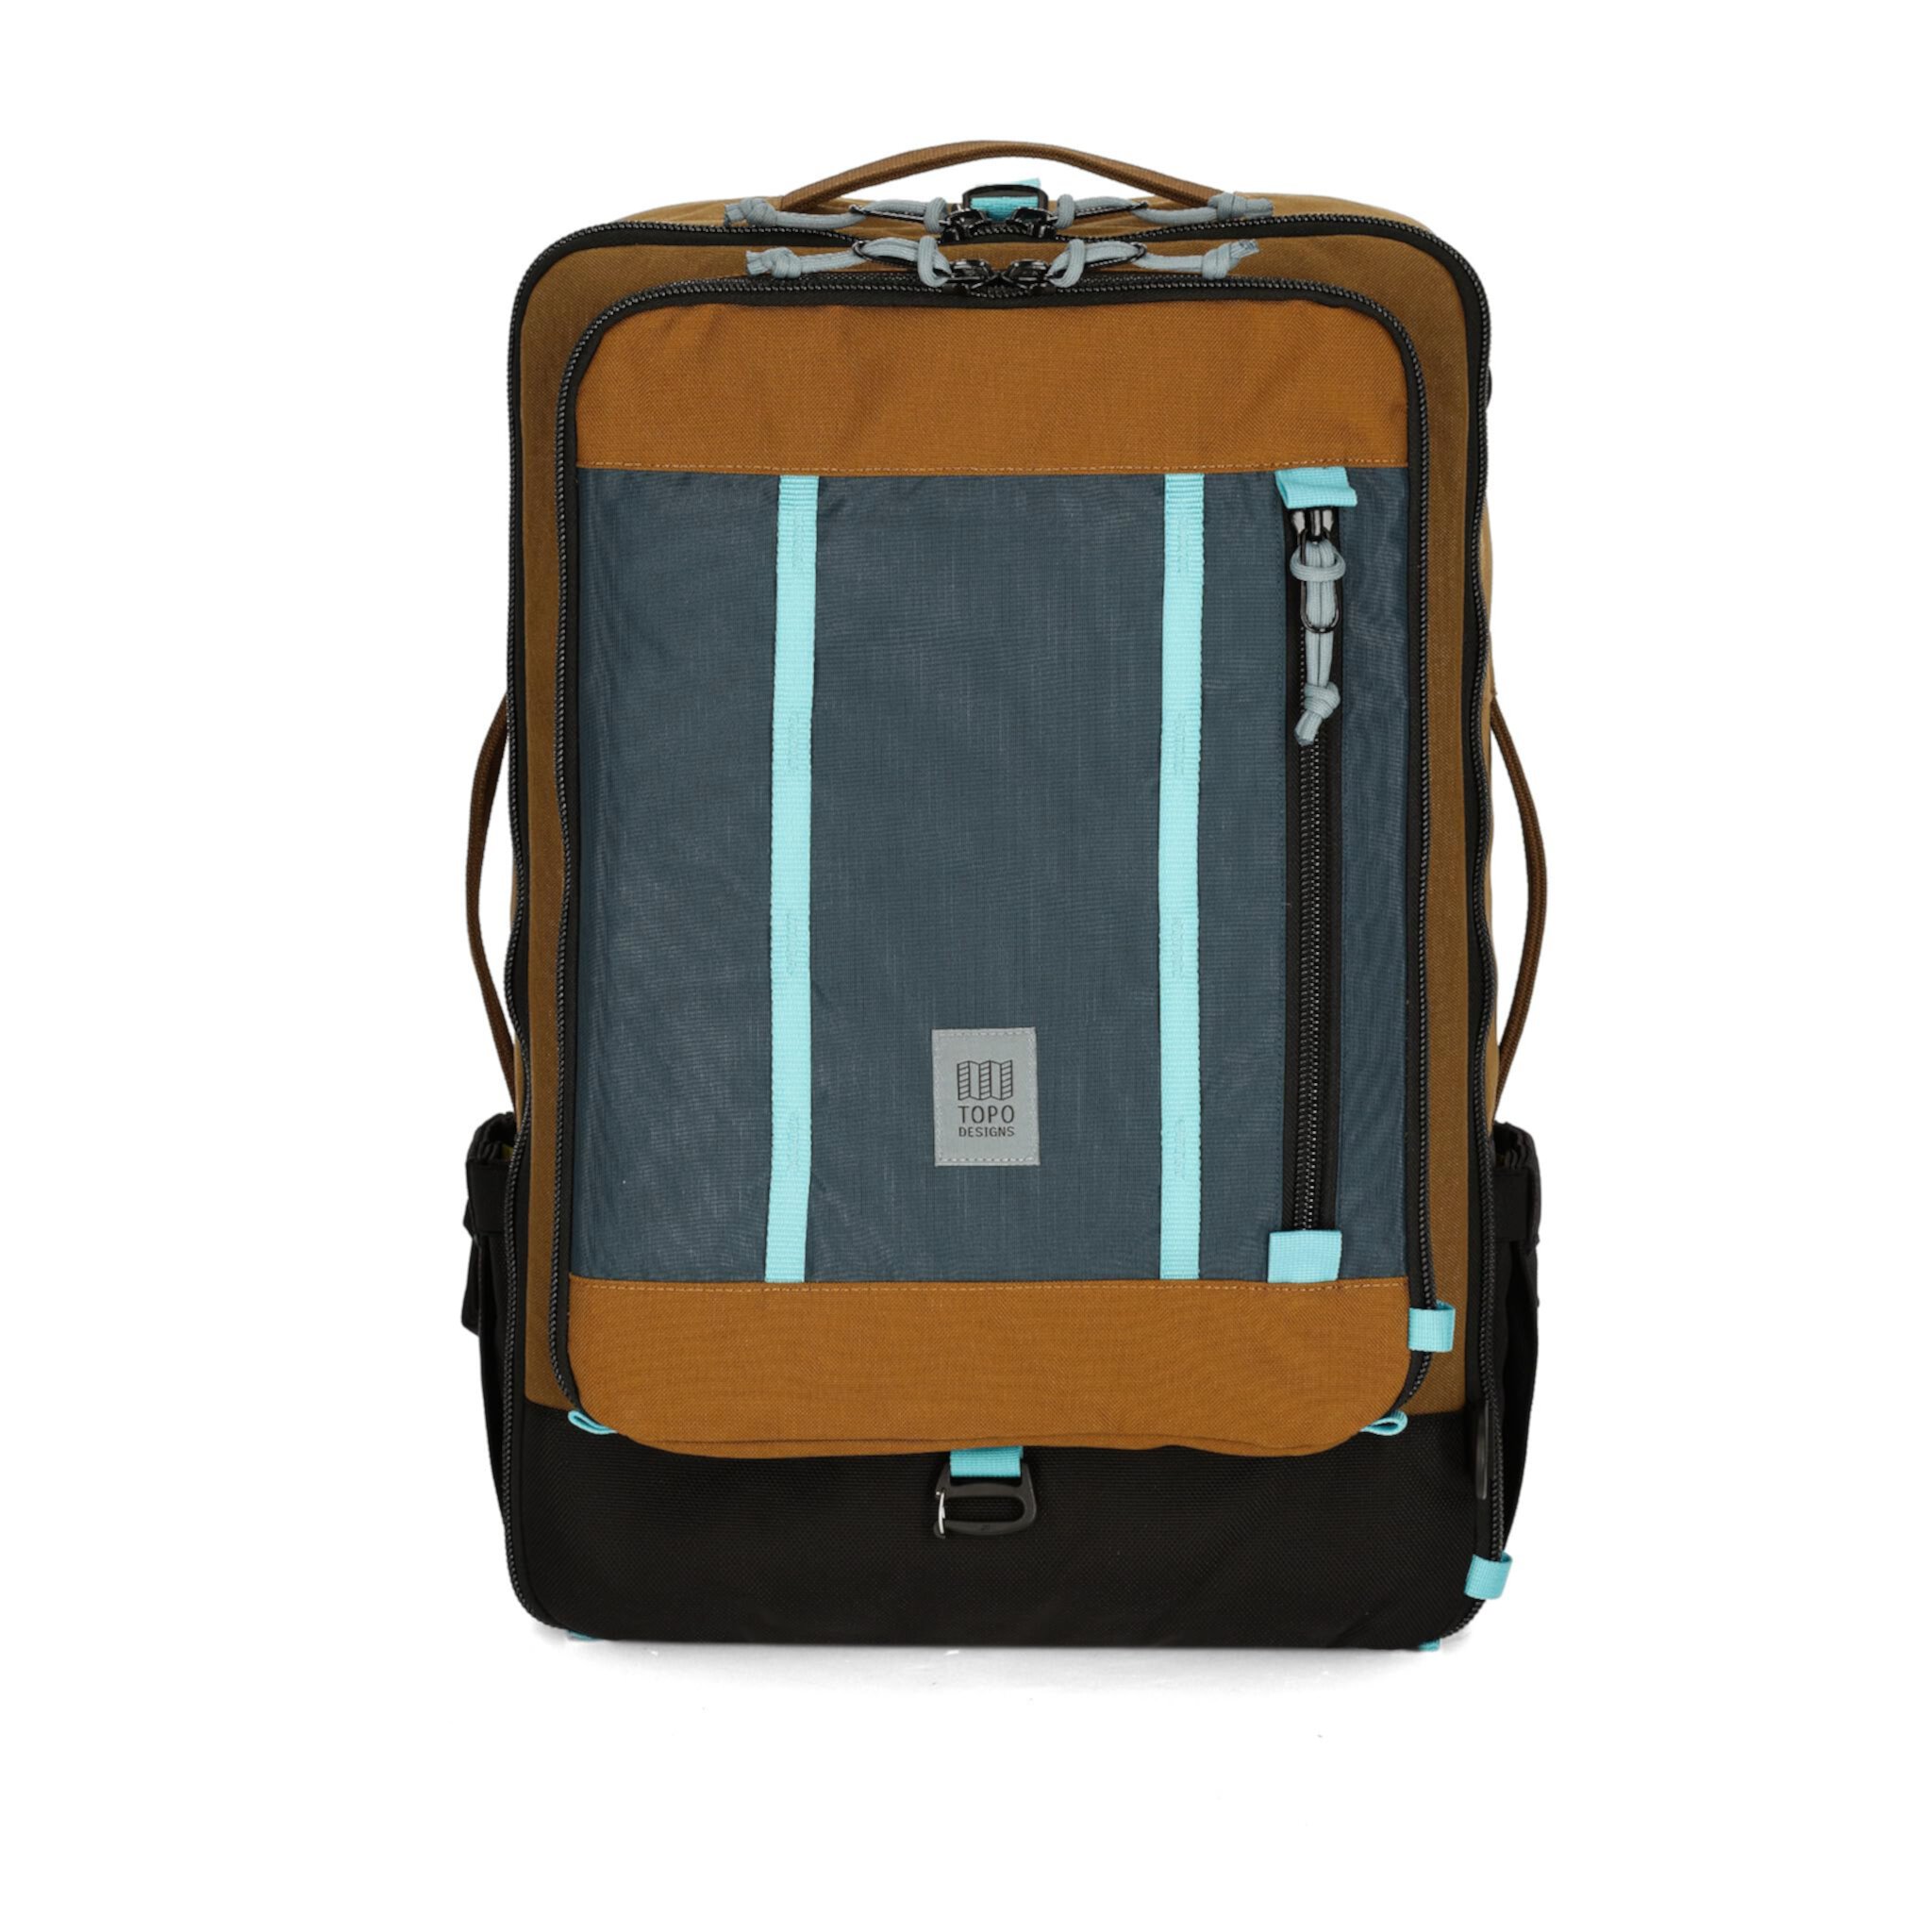 40-литровая дорожная сумка Global Topo Designs